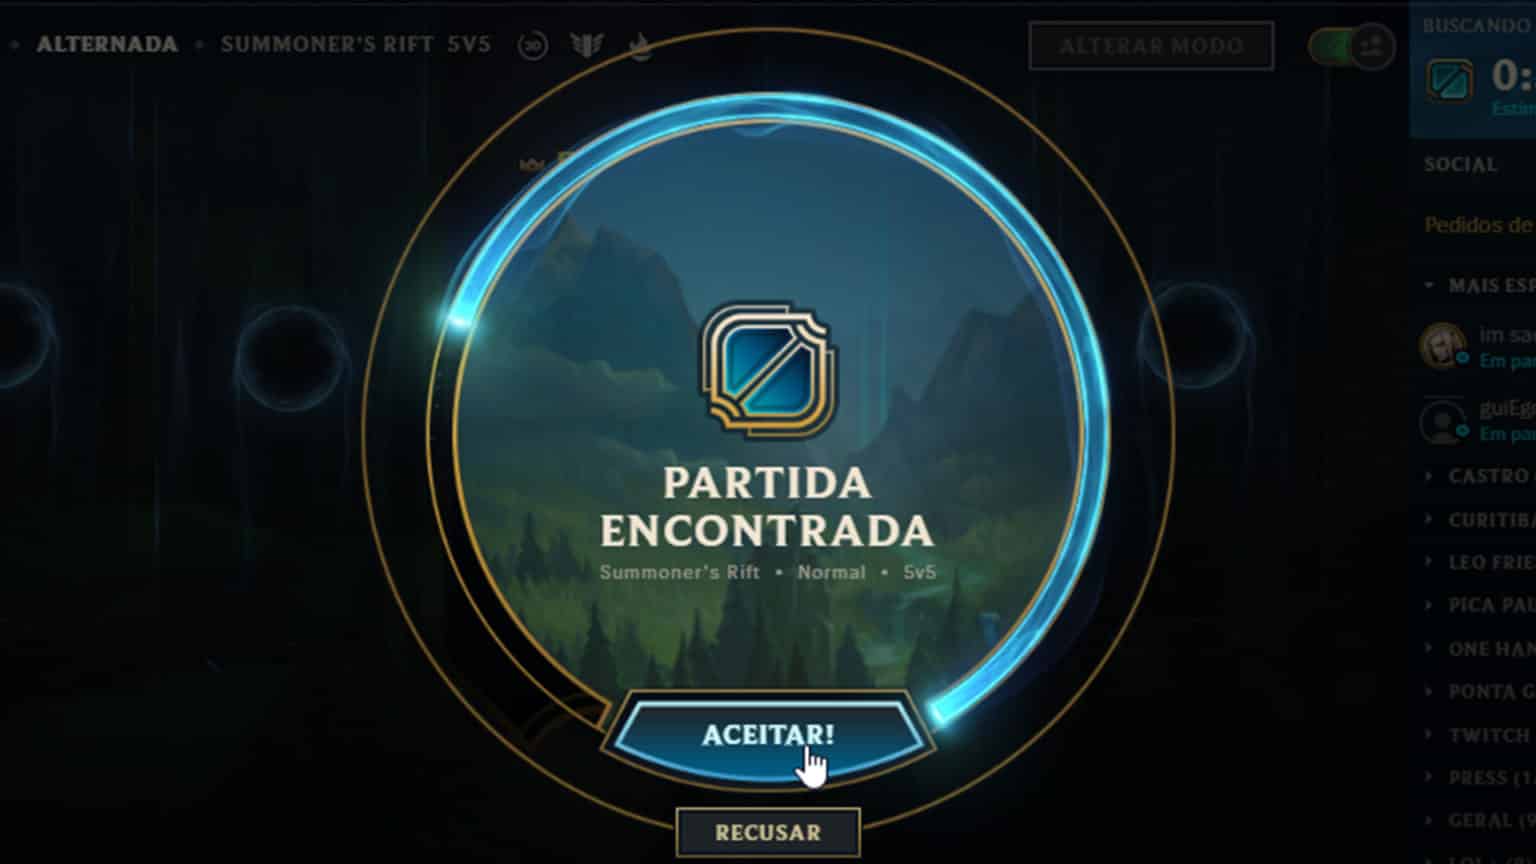 League of Legends Brasil on X: Dentro do próprio cliente, você pode  conferir quais Recompensas Ranqueadas você irá receber clicando no ícone de  ponto de interrogação em cima do seu ranque na